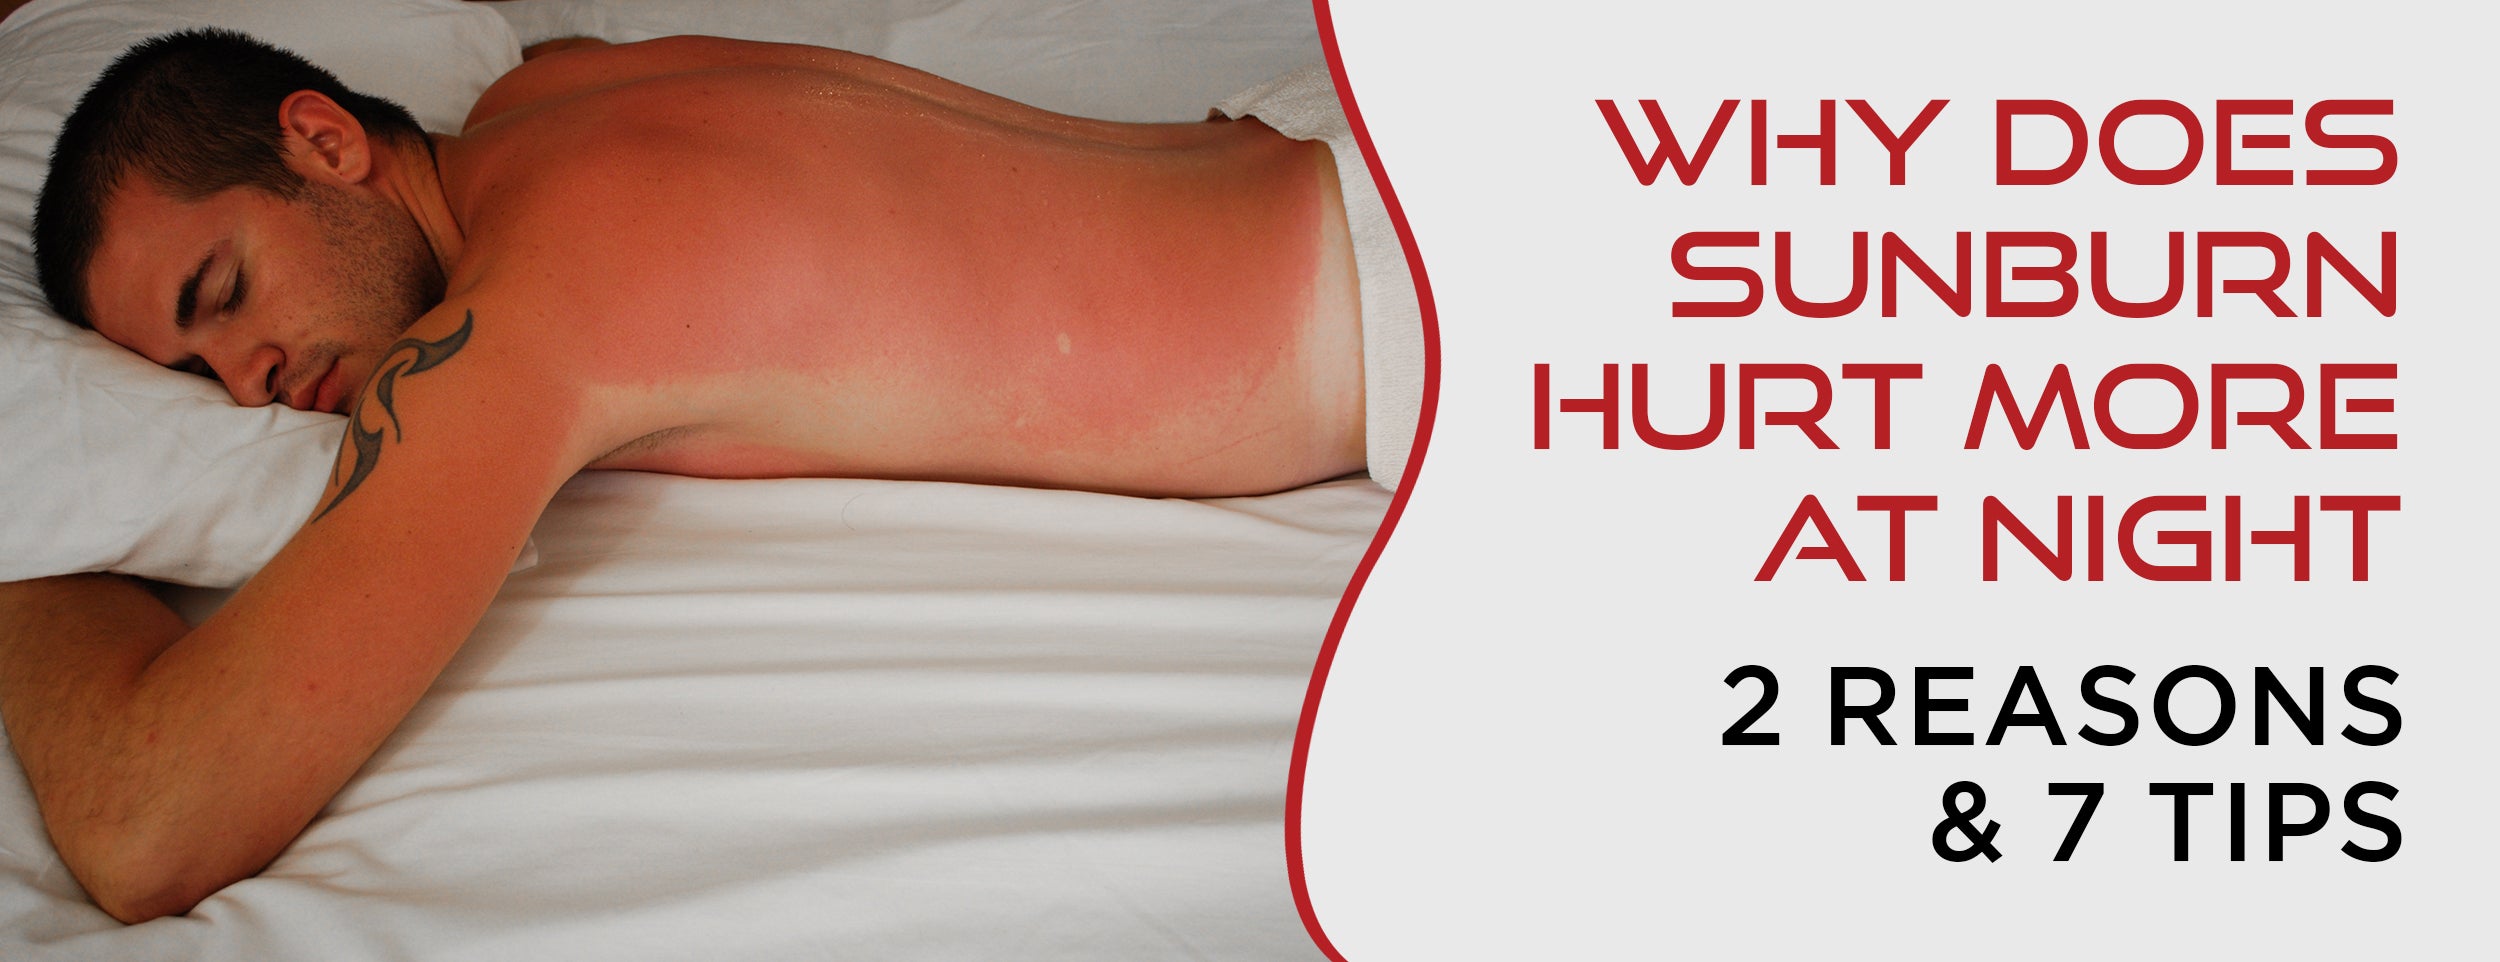 2 Reasons & 7 Tips Why Sunburn Hurts More at Night